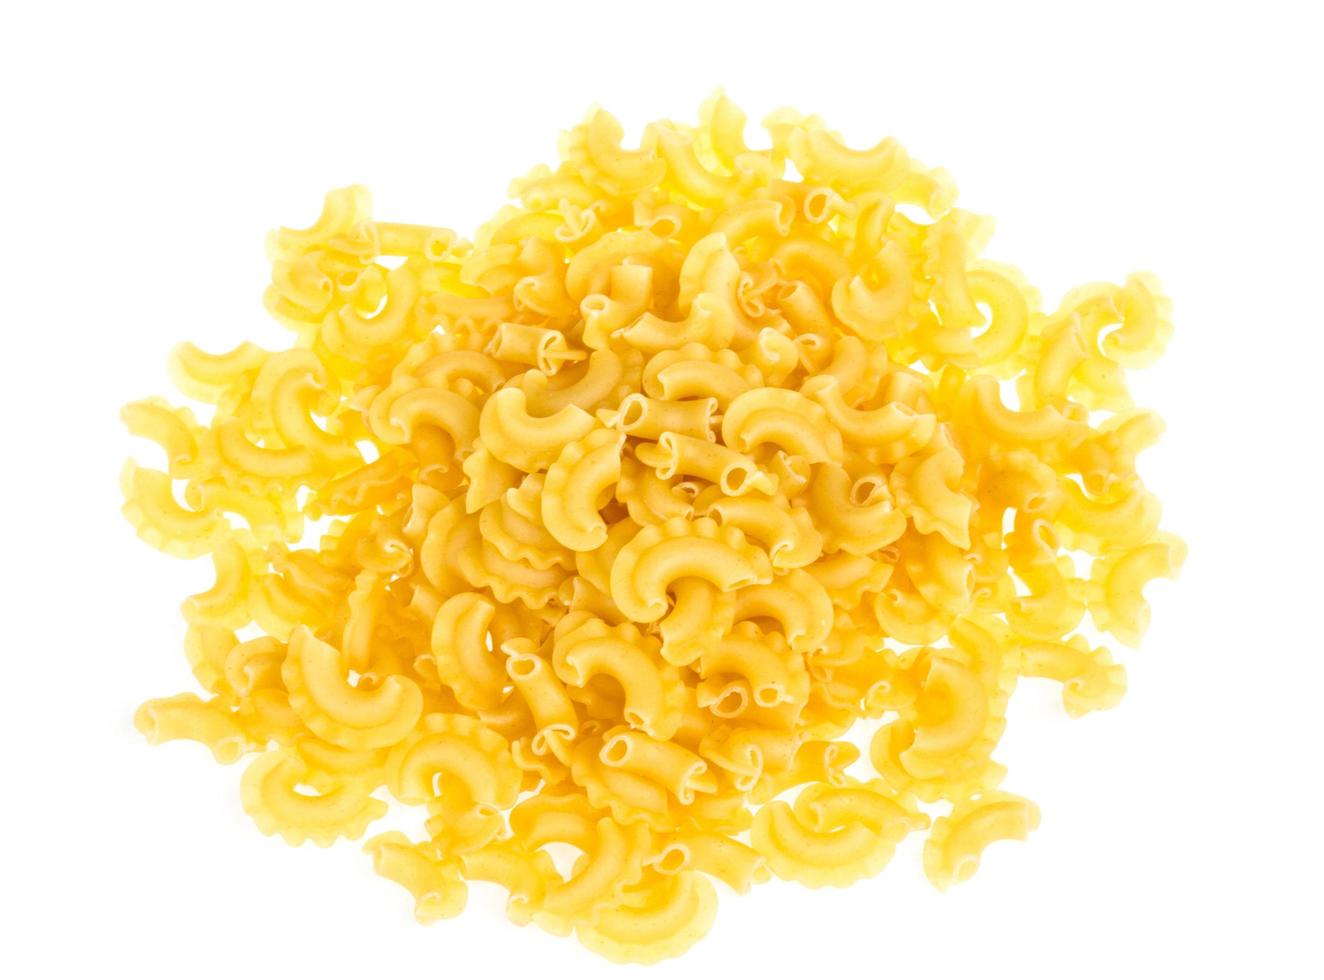 italian pasta isolated on white background photo